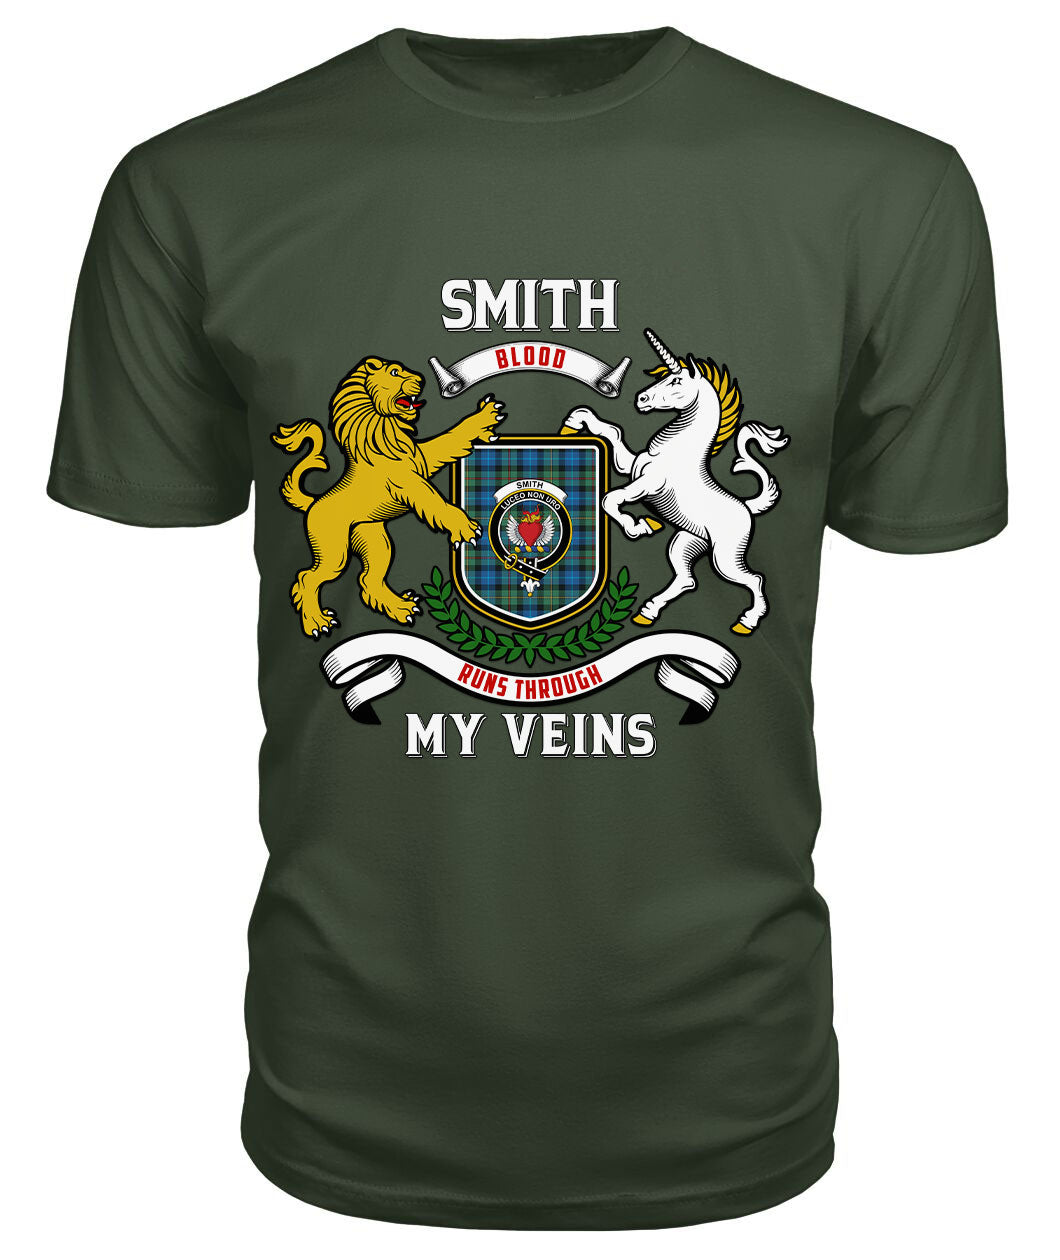 Smith Ancient Tartan Crest 2D T-shirt - Blood Runs Through My Veins Style